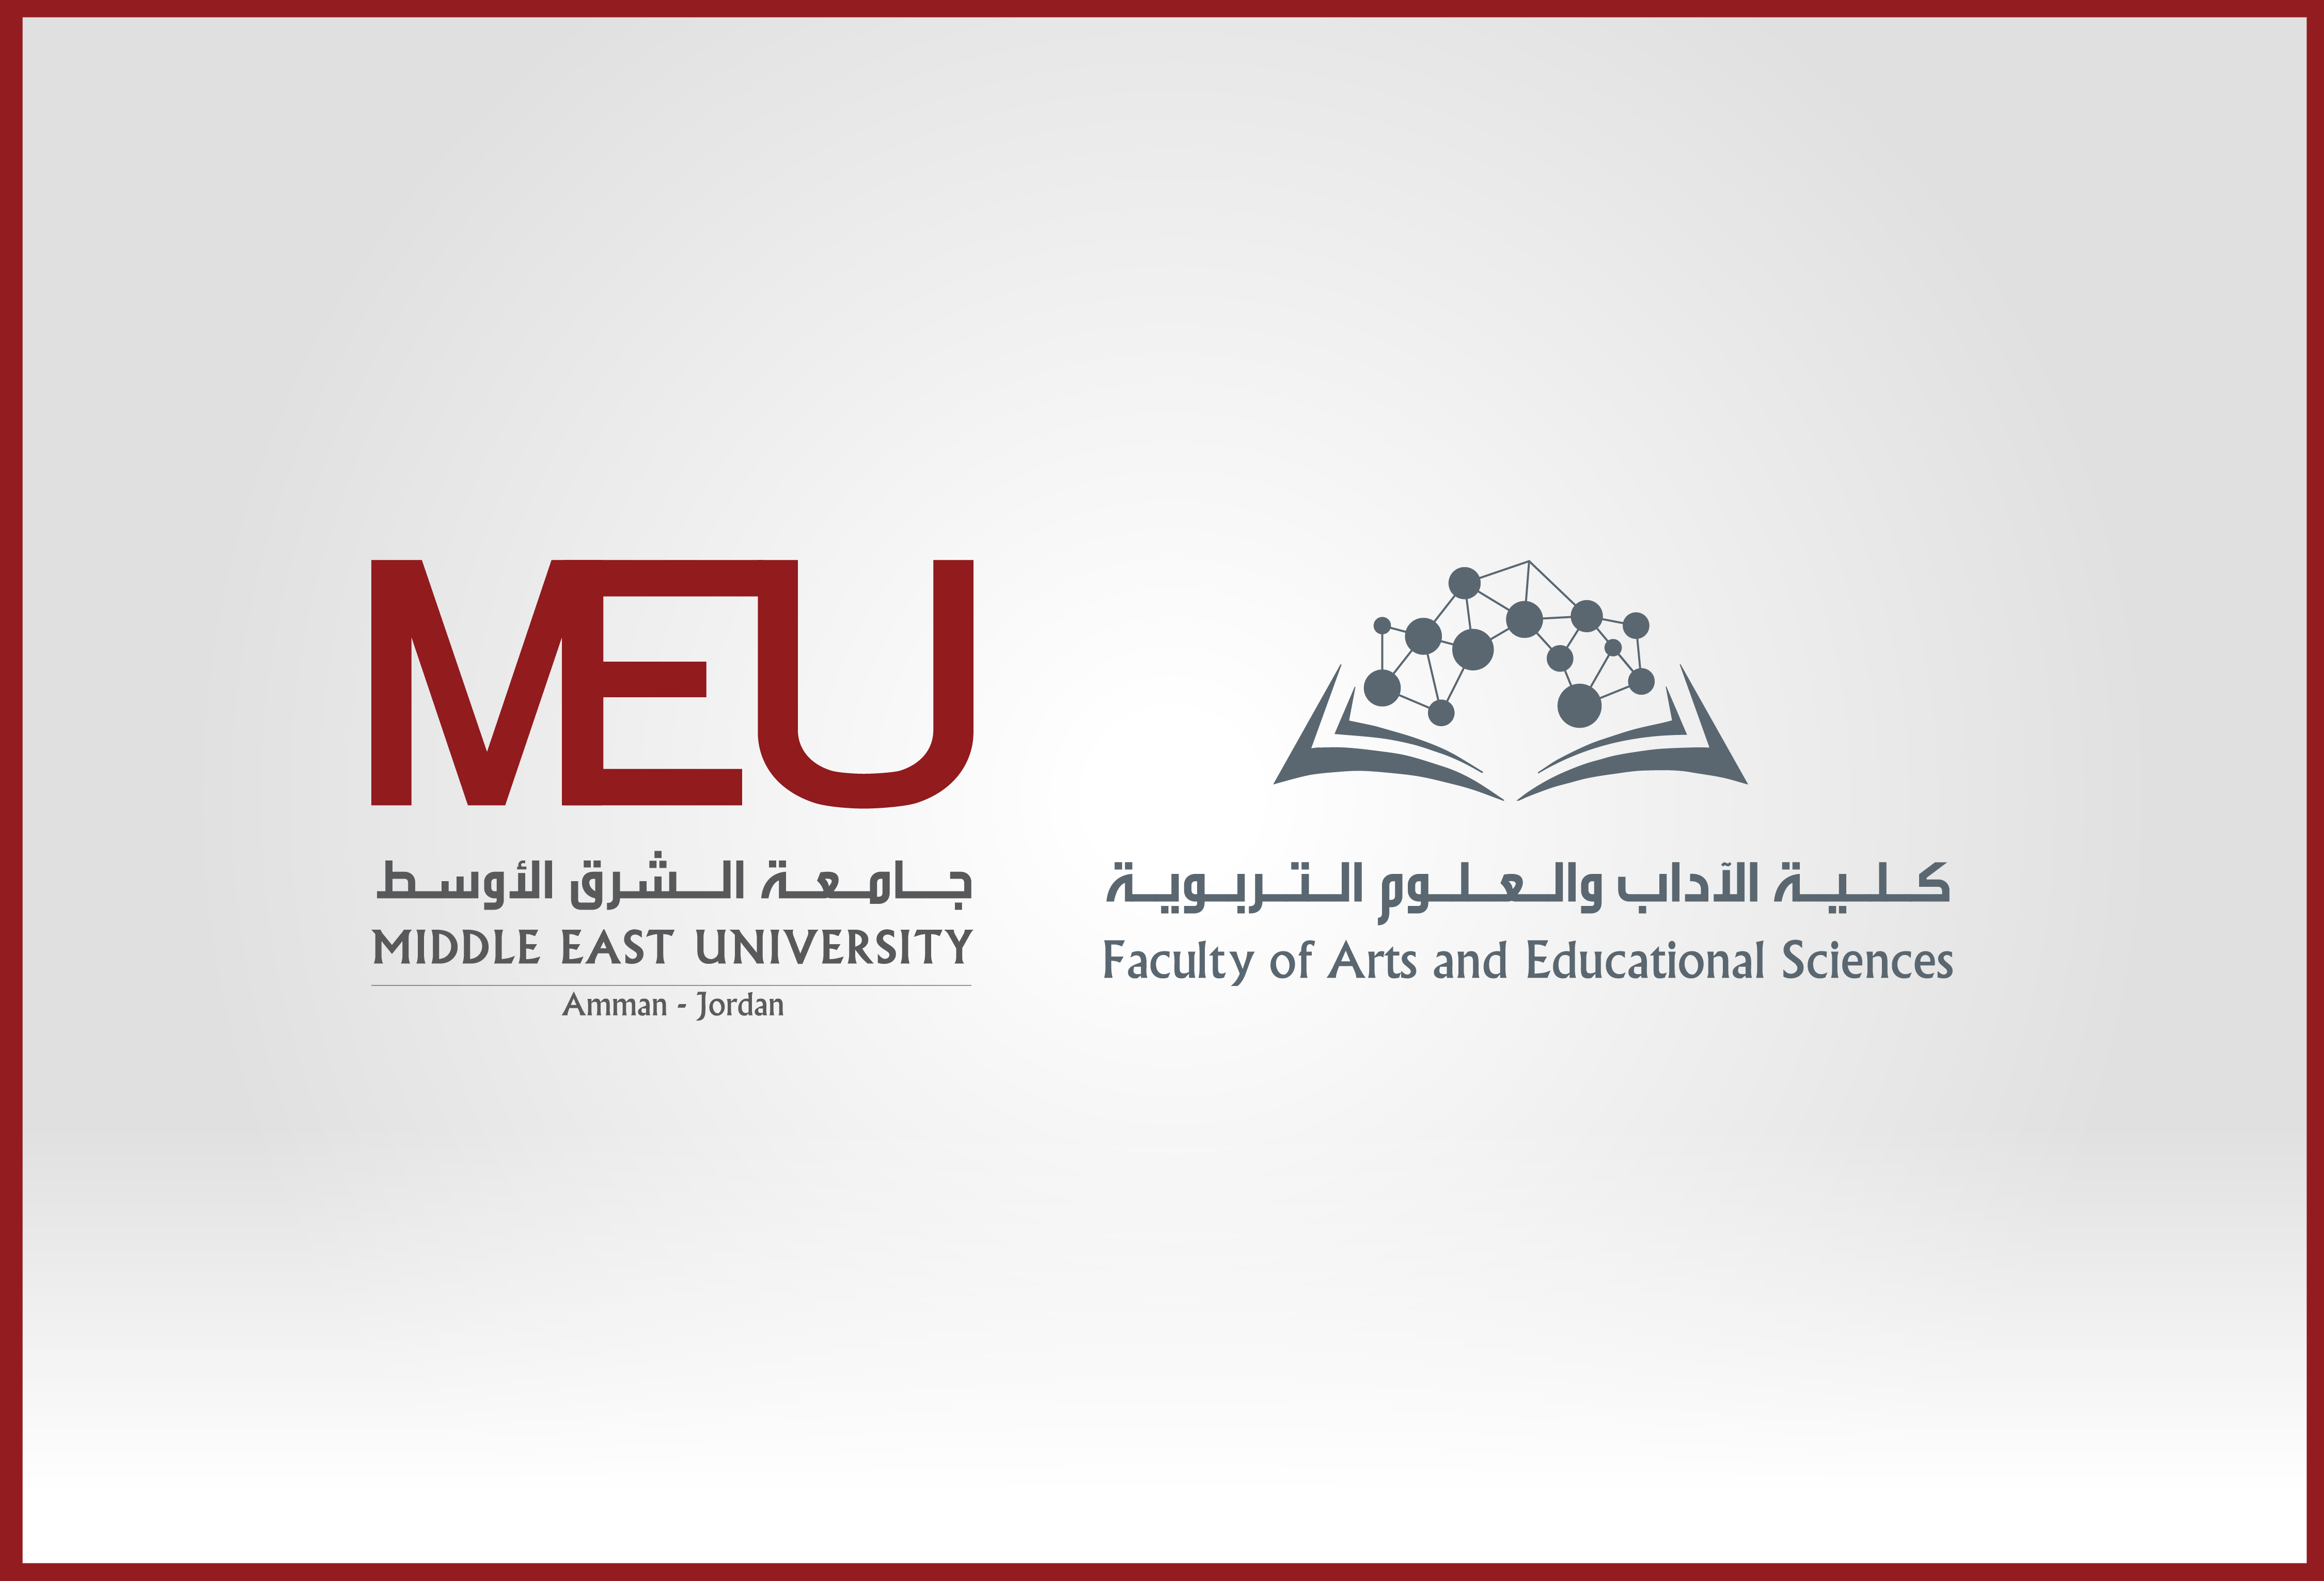 كلية الآداب والعلوم التربوية في “الشرق الأوسط” تُكرم أعضاءً حققوا رؤيتها وتطلعاتها  